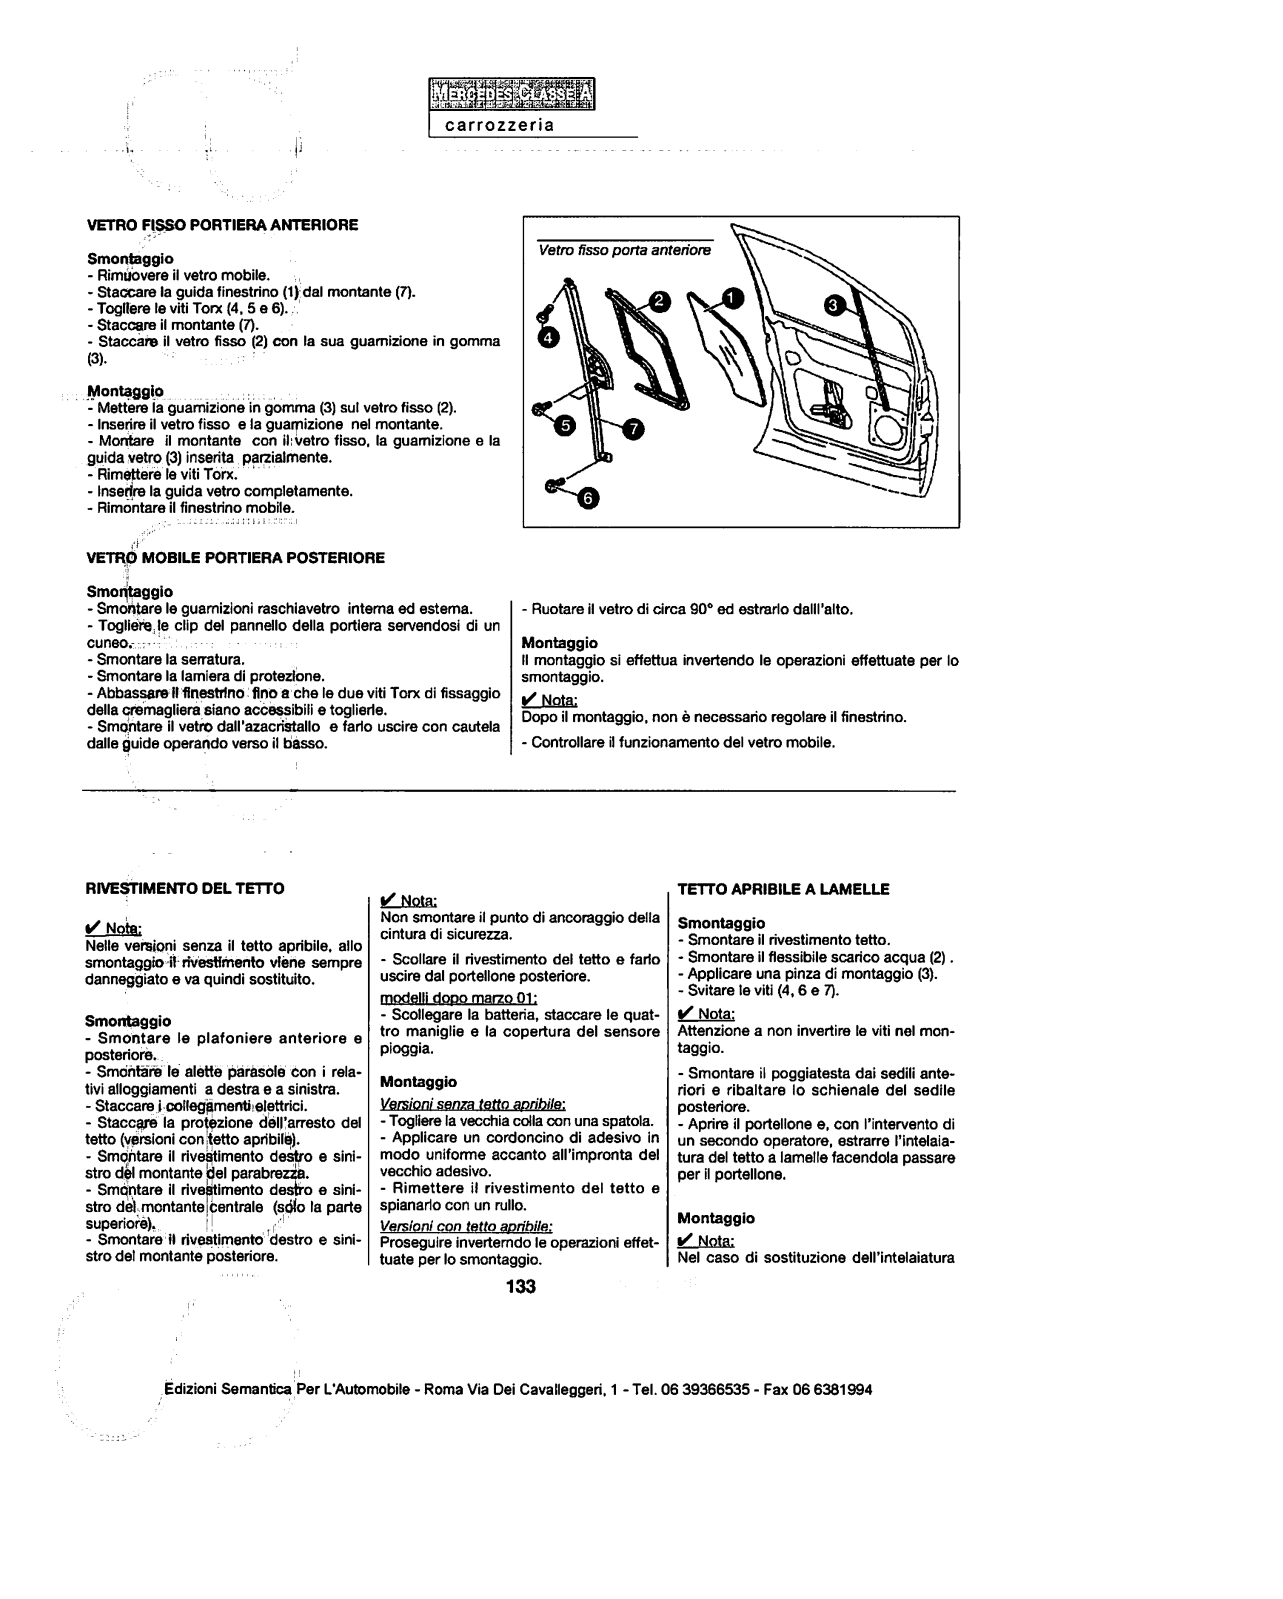 w168 - (W168): Manual técnico - tudo sobre - 1997 a 2004 - italiano F2mvx0